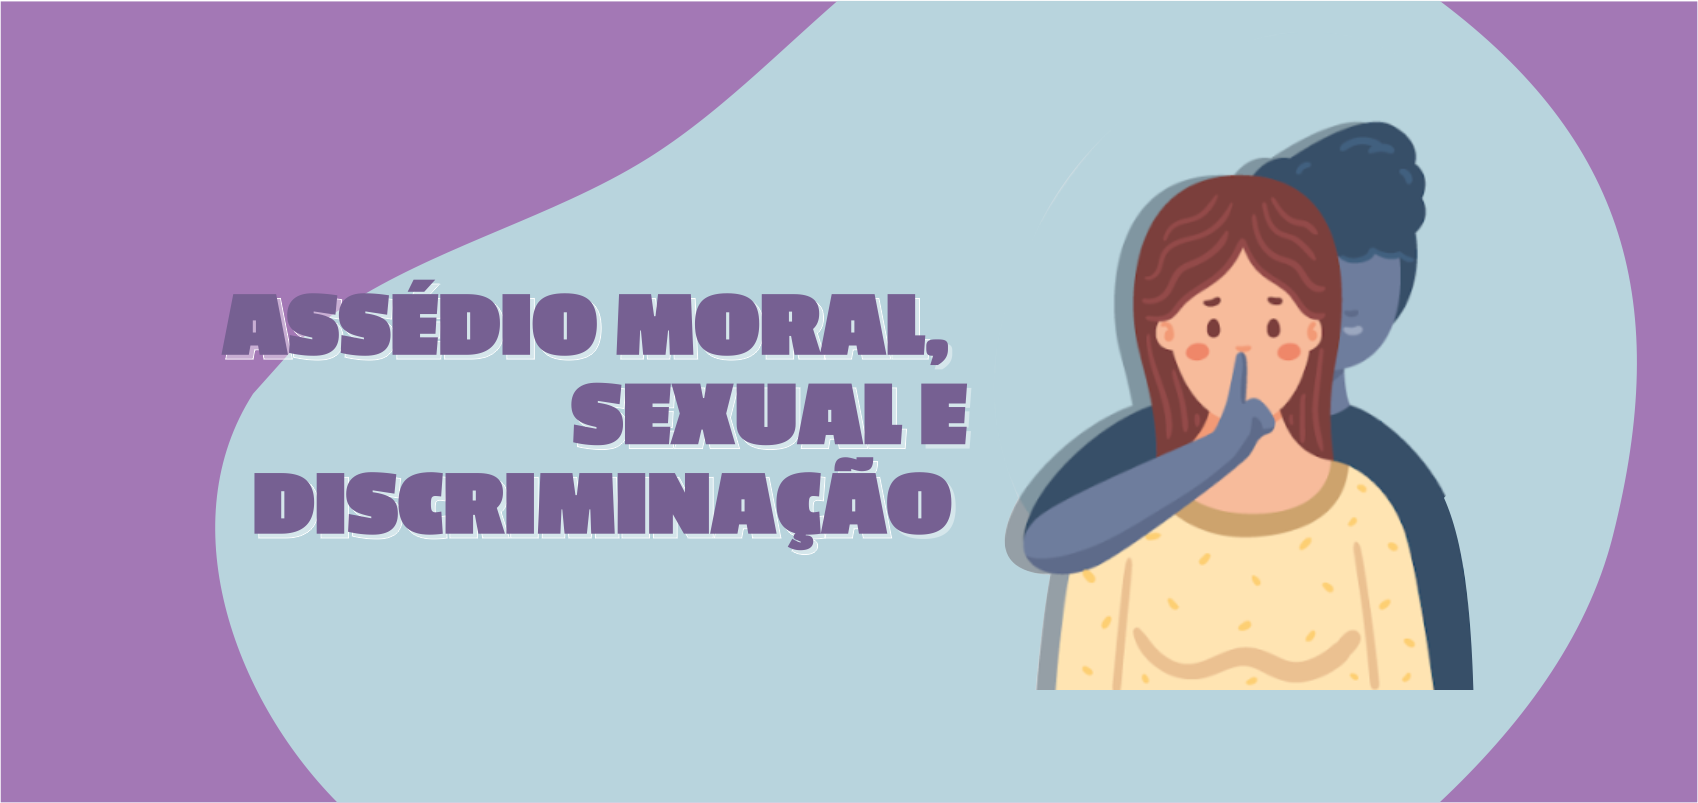 Assédio Moral, Sexual e Discriminação